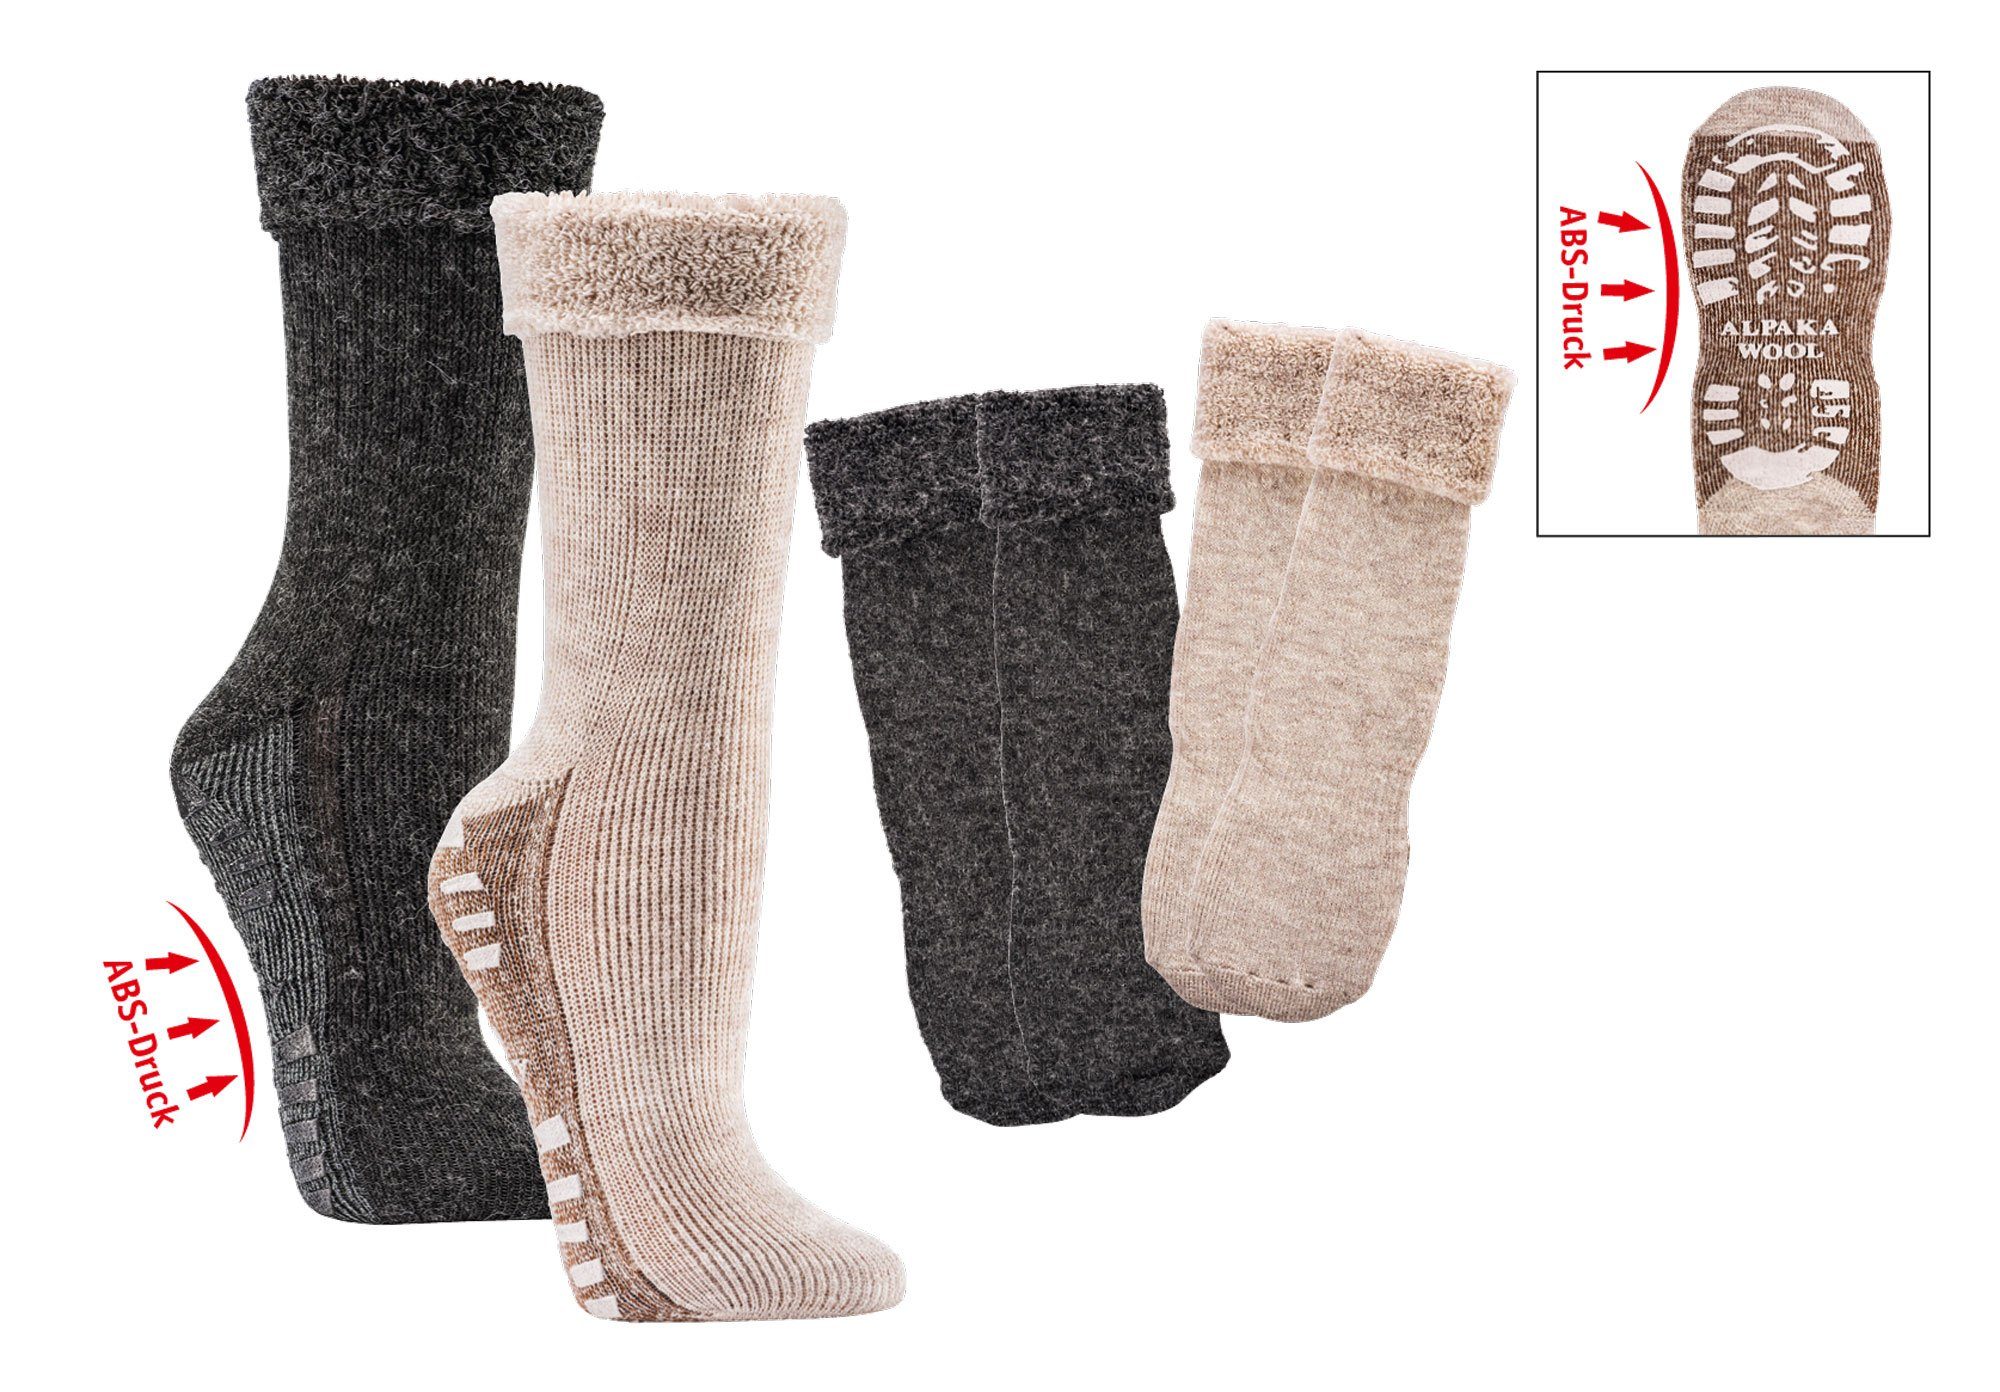 Wowerat ABS-Socken mit Alpaka Wolle extra flauschig gefüttert Homesocks Bettsocken (2 Paar) mit ABS Druck auf der Sohle beige